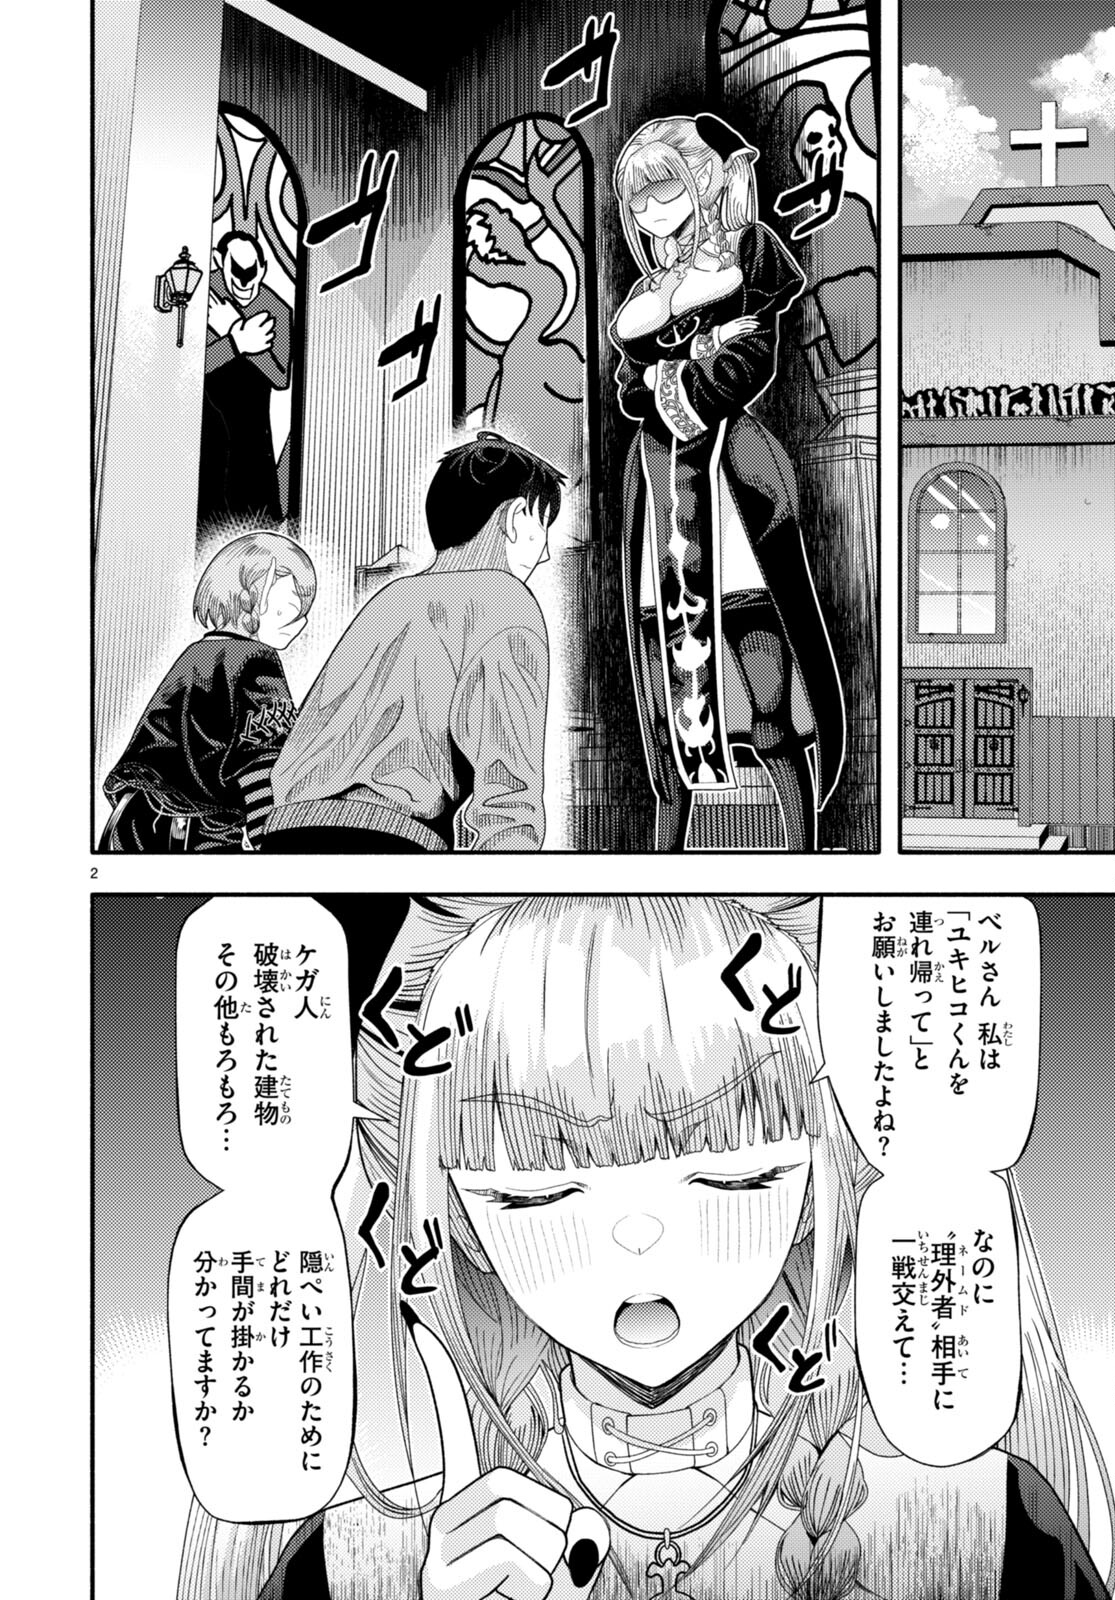 Akuma wa Rozario ni Kiss wo suru - Chapter 6 - Page 2